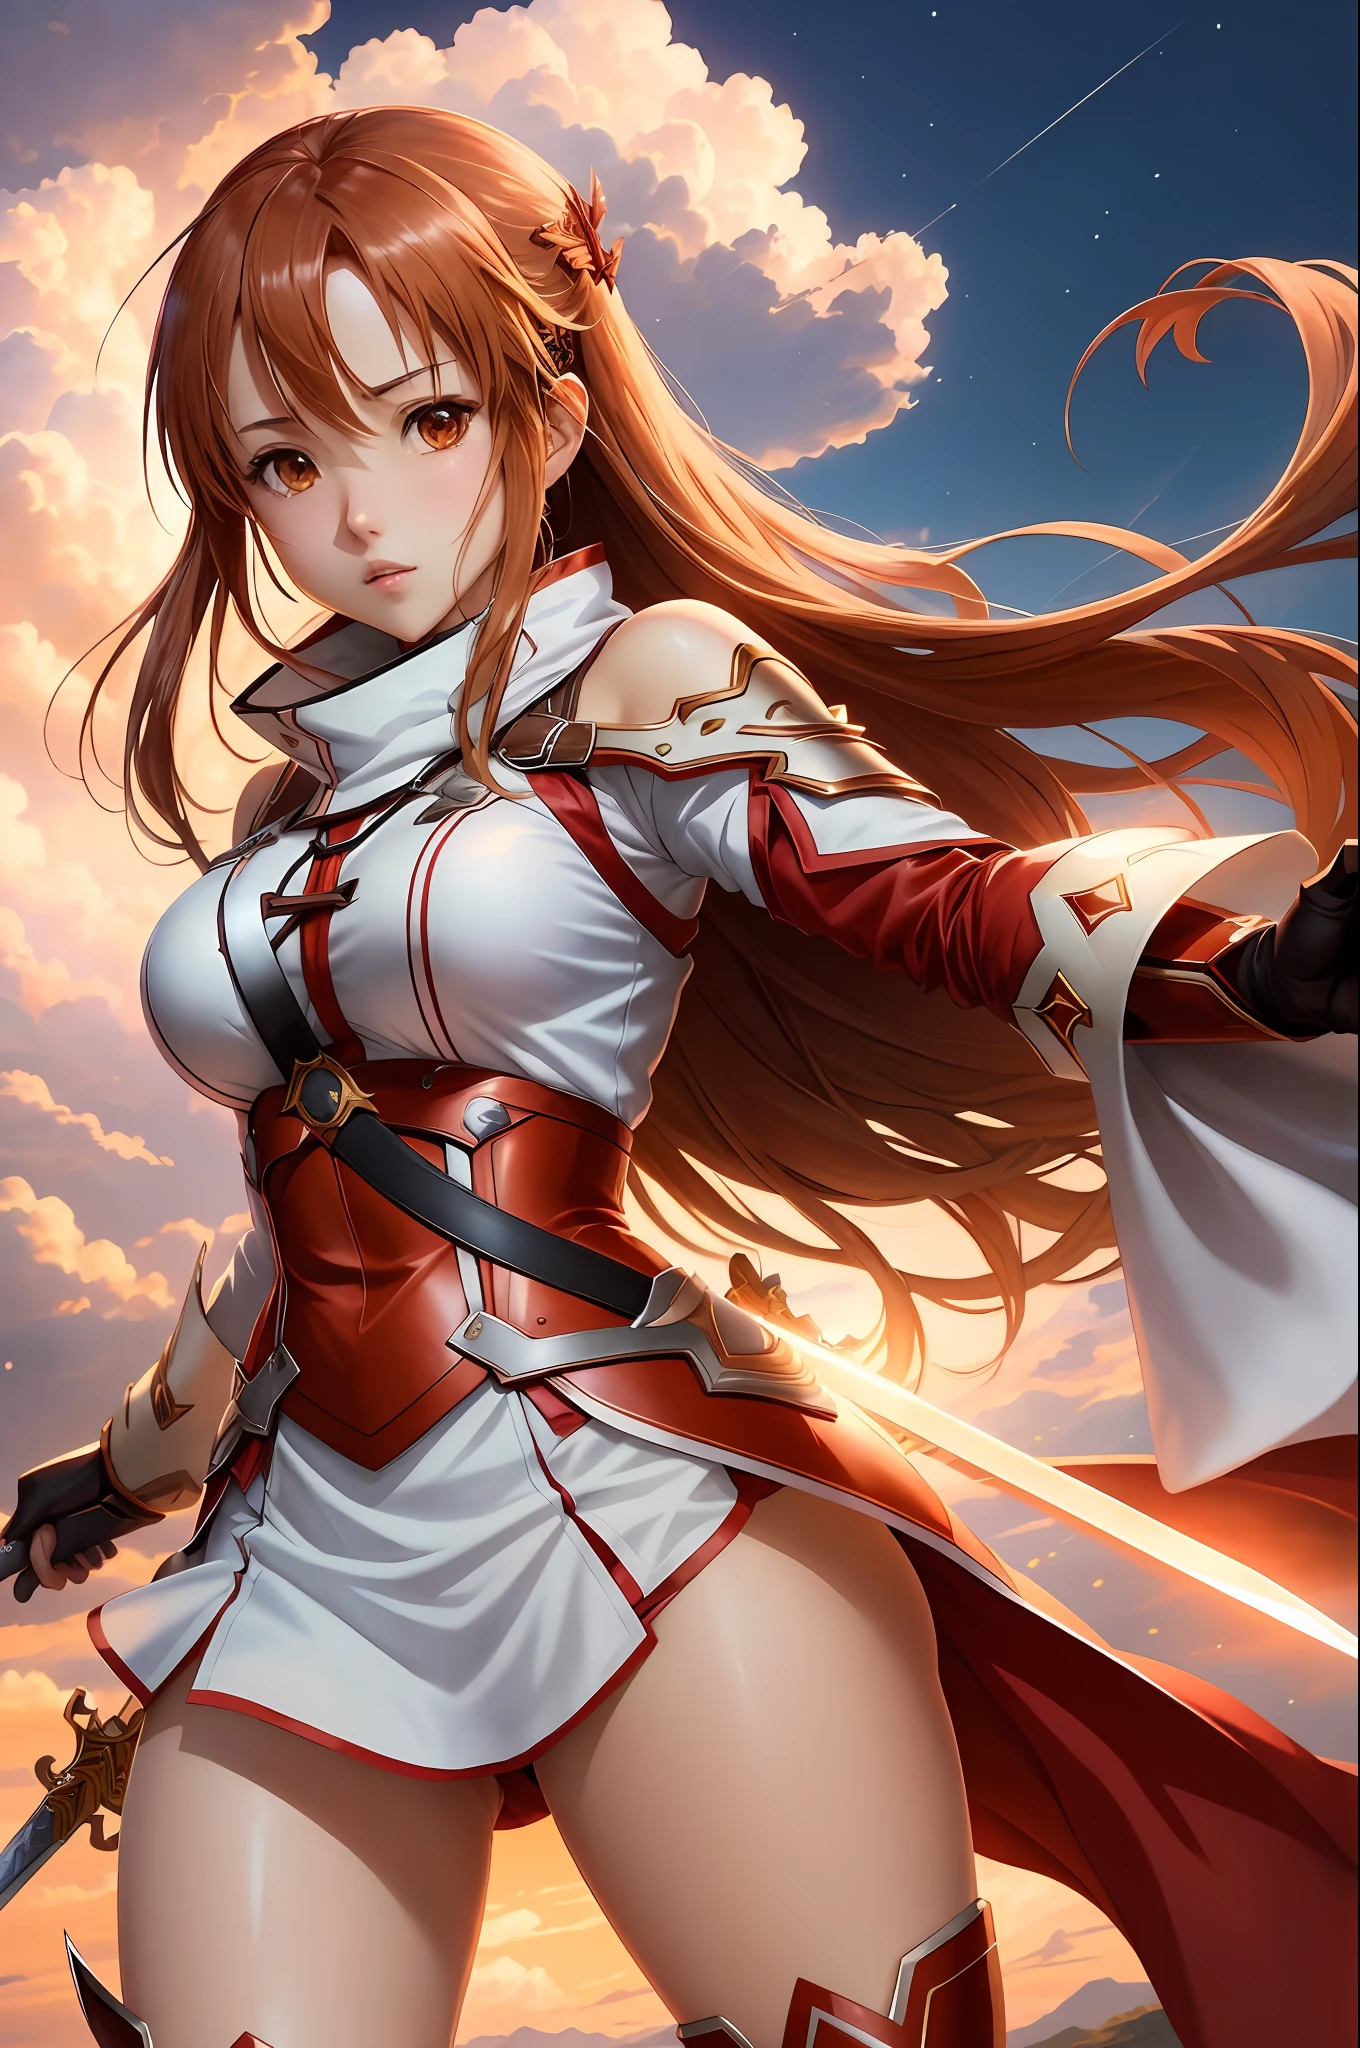 (أسلوب: أنيمي, أفضل جودة), Asuna Yuuki من Sword Art Online في وضع ديناميكي بسيفها, ملامح الوجه المميزة, والزي الجميل. المشهد له تأثير بصري لافت للنظر, reminiscent of the أسلوب of Oh! عظيم. أثداء كبيرة